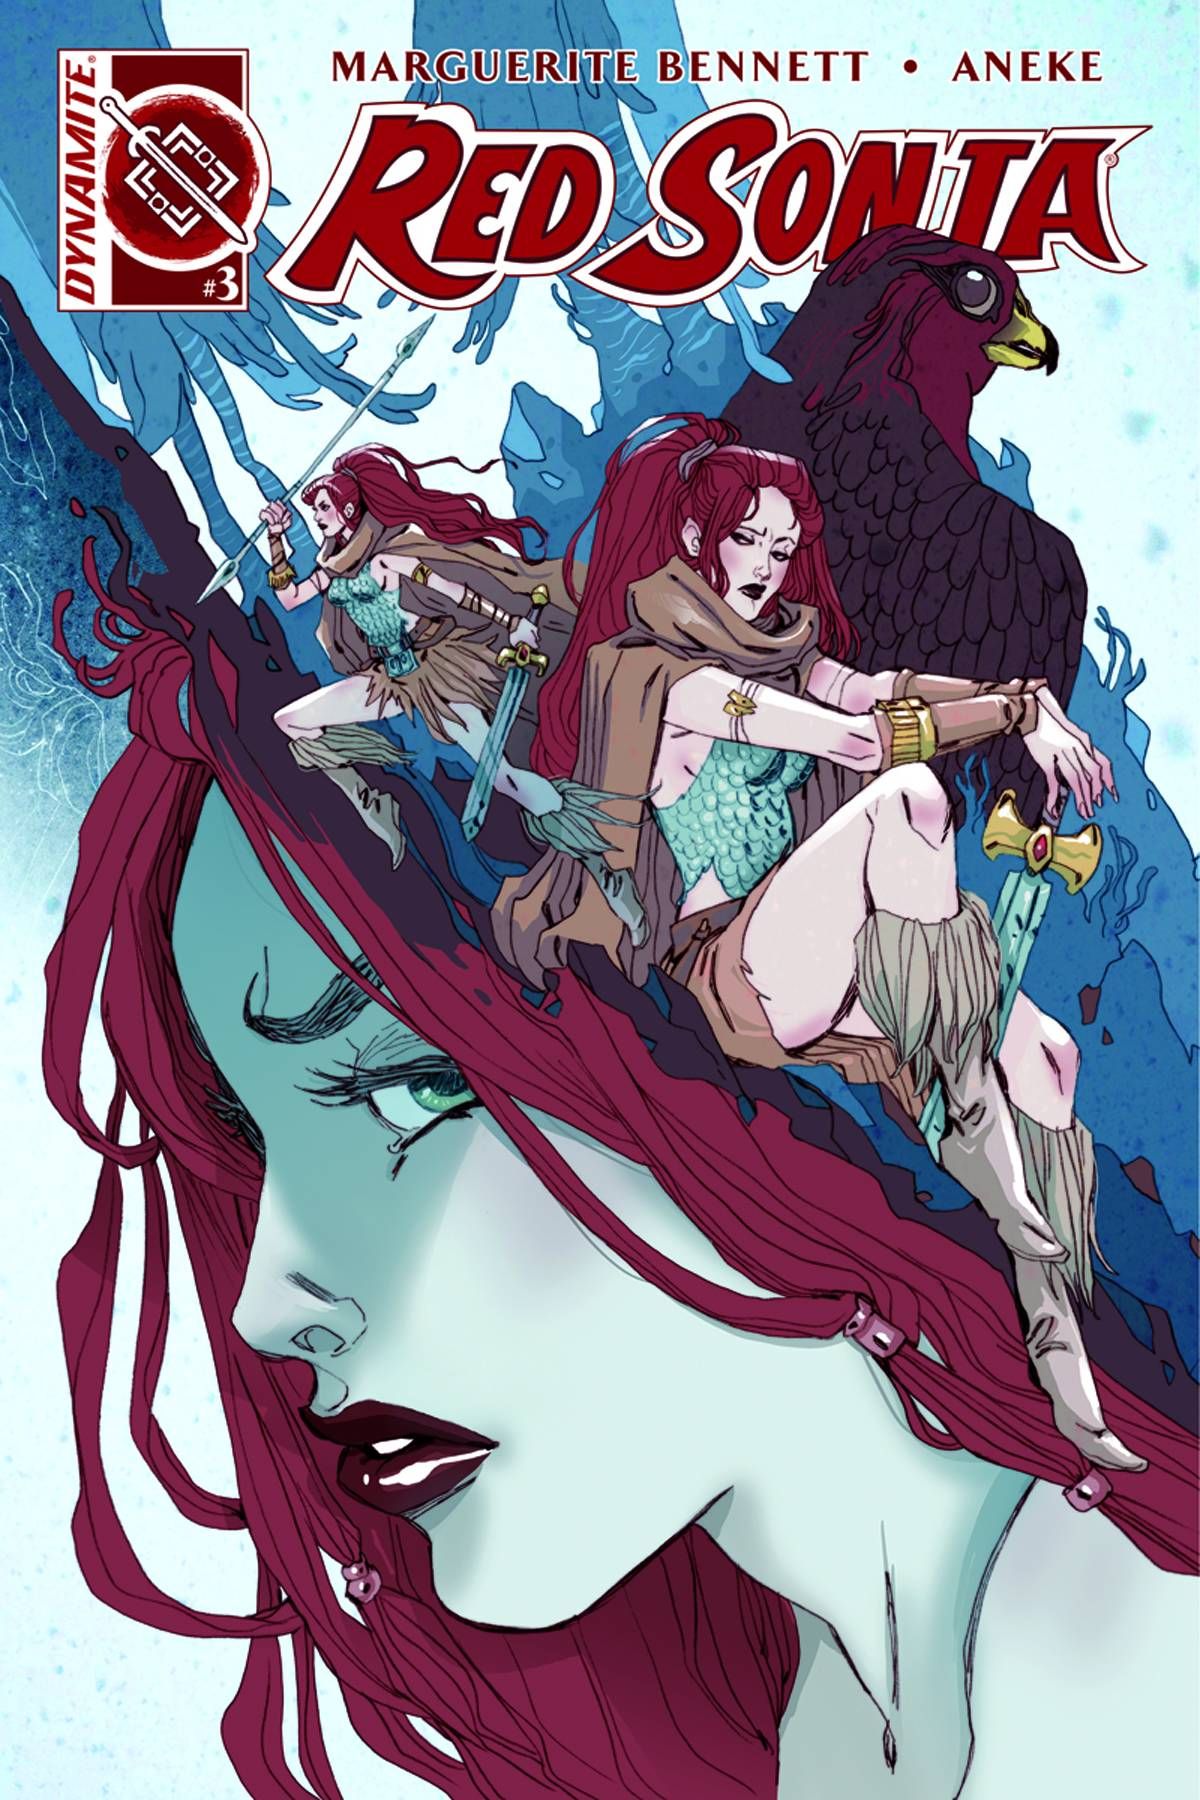 Red Sonja (Volume 3) #3 Comic